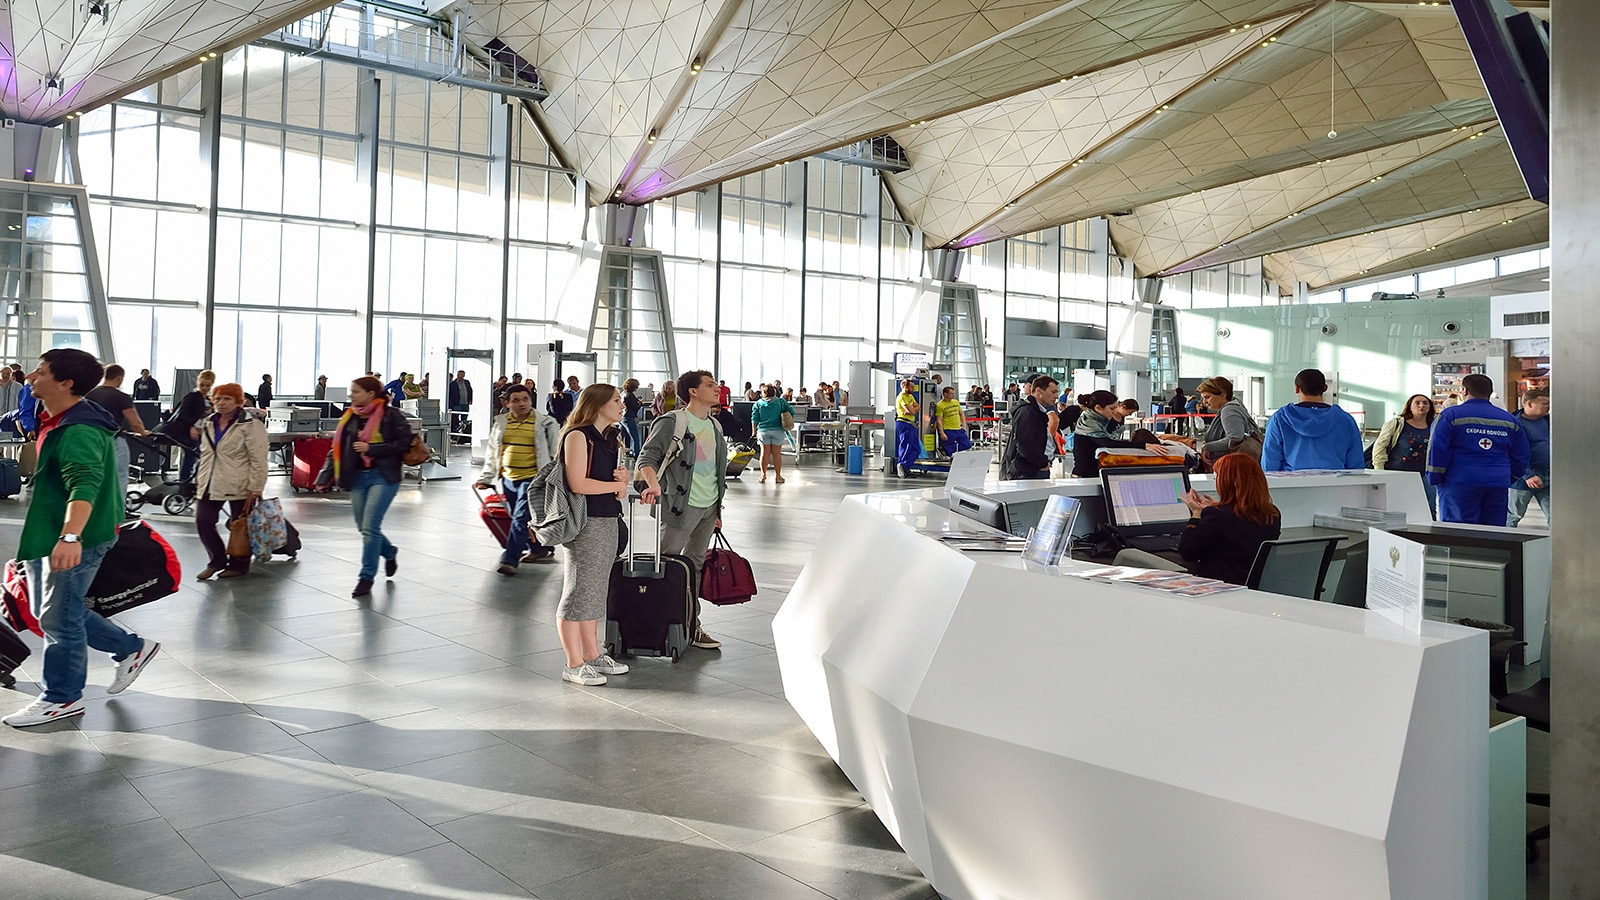 Krion® набирает популярность при строительстве аэропортов благодаря своей высокой безопасности и гигиене